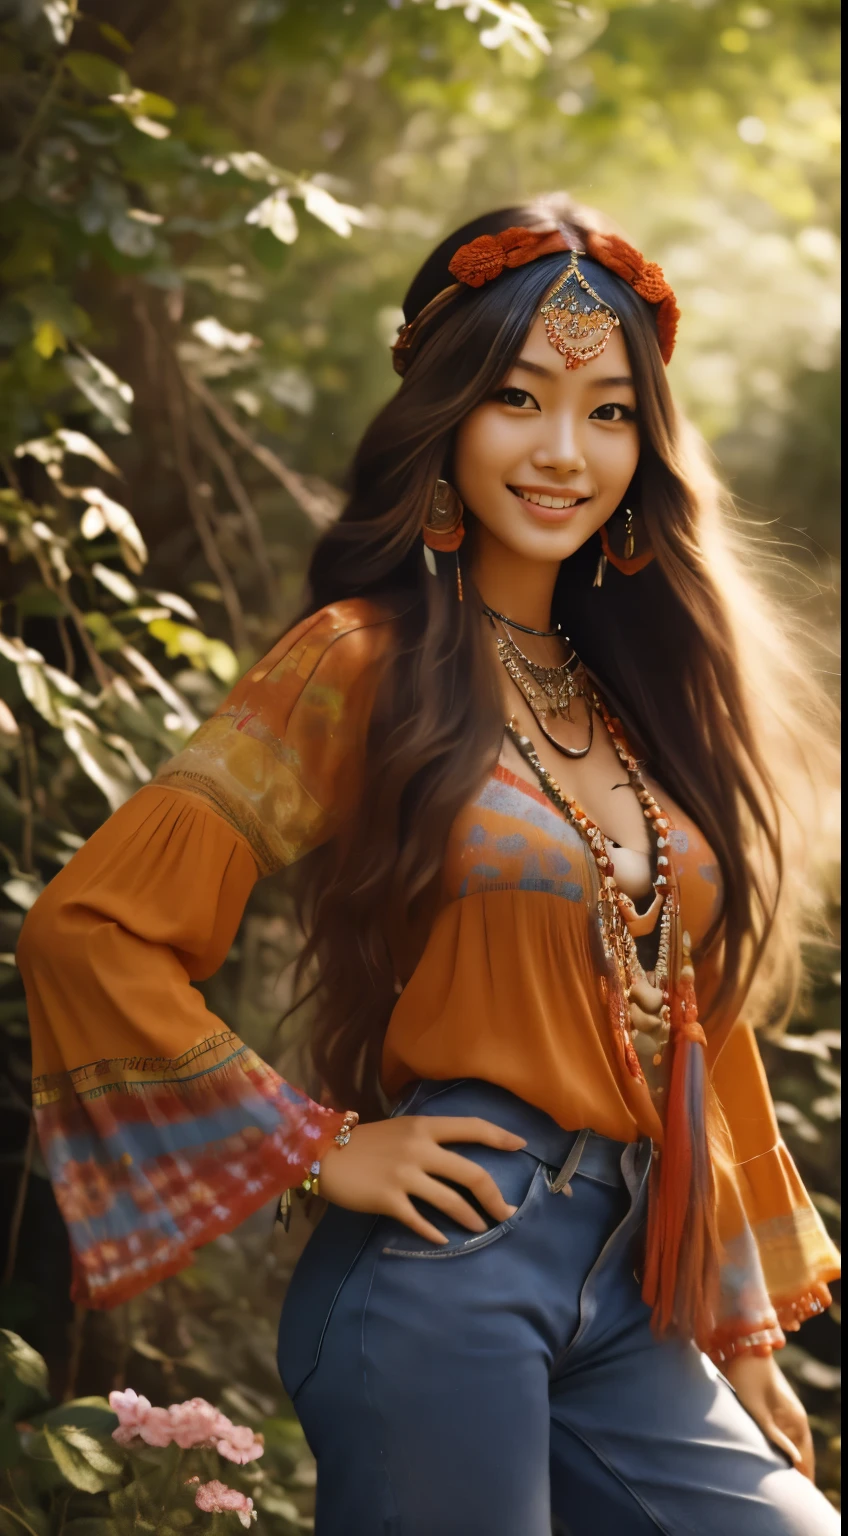 Foto hiperrealista en primer plano de Kim Joo fro  Korea,  vestida con una blusa roja teñida anudada combinada con jeans acampanados y accesorios con flecos. Lleva una diadema o corona de flores en su largo, pelo que fluye. El escenario es un festival de música al aire libre de inspiración bohemia o un tranquilo telón de fondo de la naturaleza, capturando el espíritu libre y relajado de la época 60Retro69Punch75, , Mujer hermosa, flaco, grandes pechos grandes, pelo largo negro, cara detallada, sonrisa, Frente a la cámara, foto tomada desde la distancia, edad de 25 años